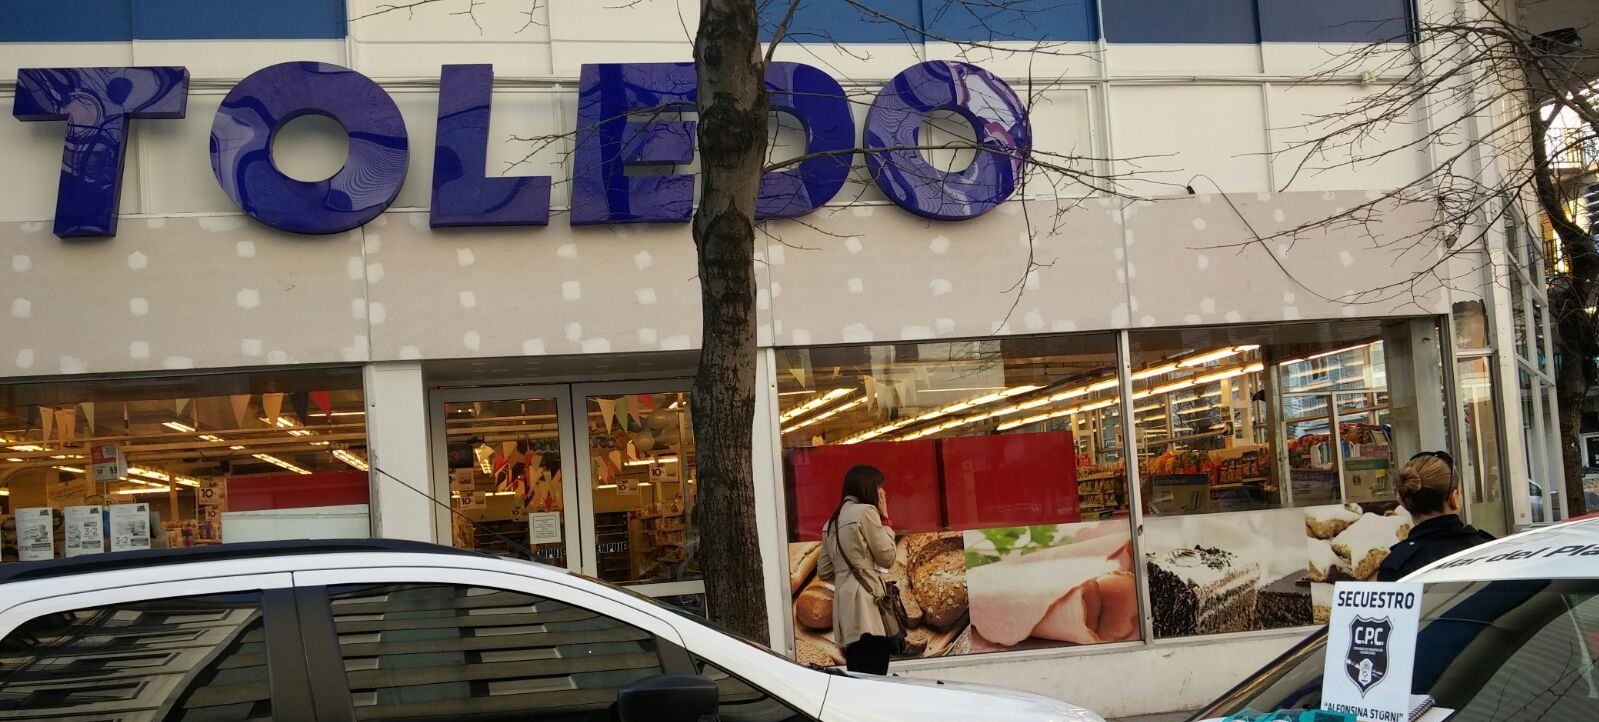 Rumores de cierre en supermercados Toledo y temor en sus 2 mil trabajadores